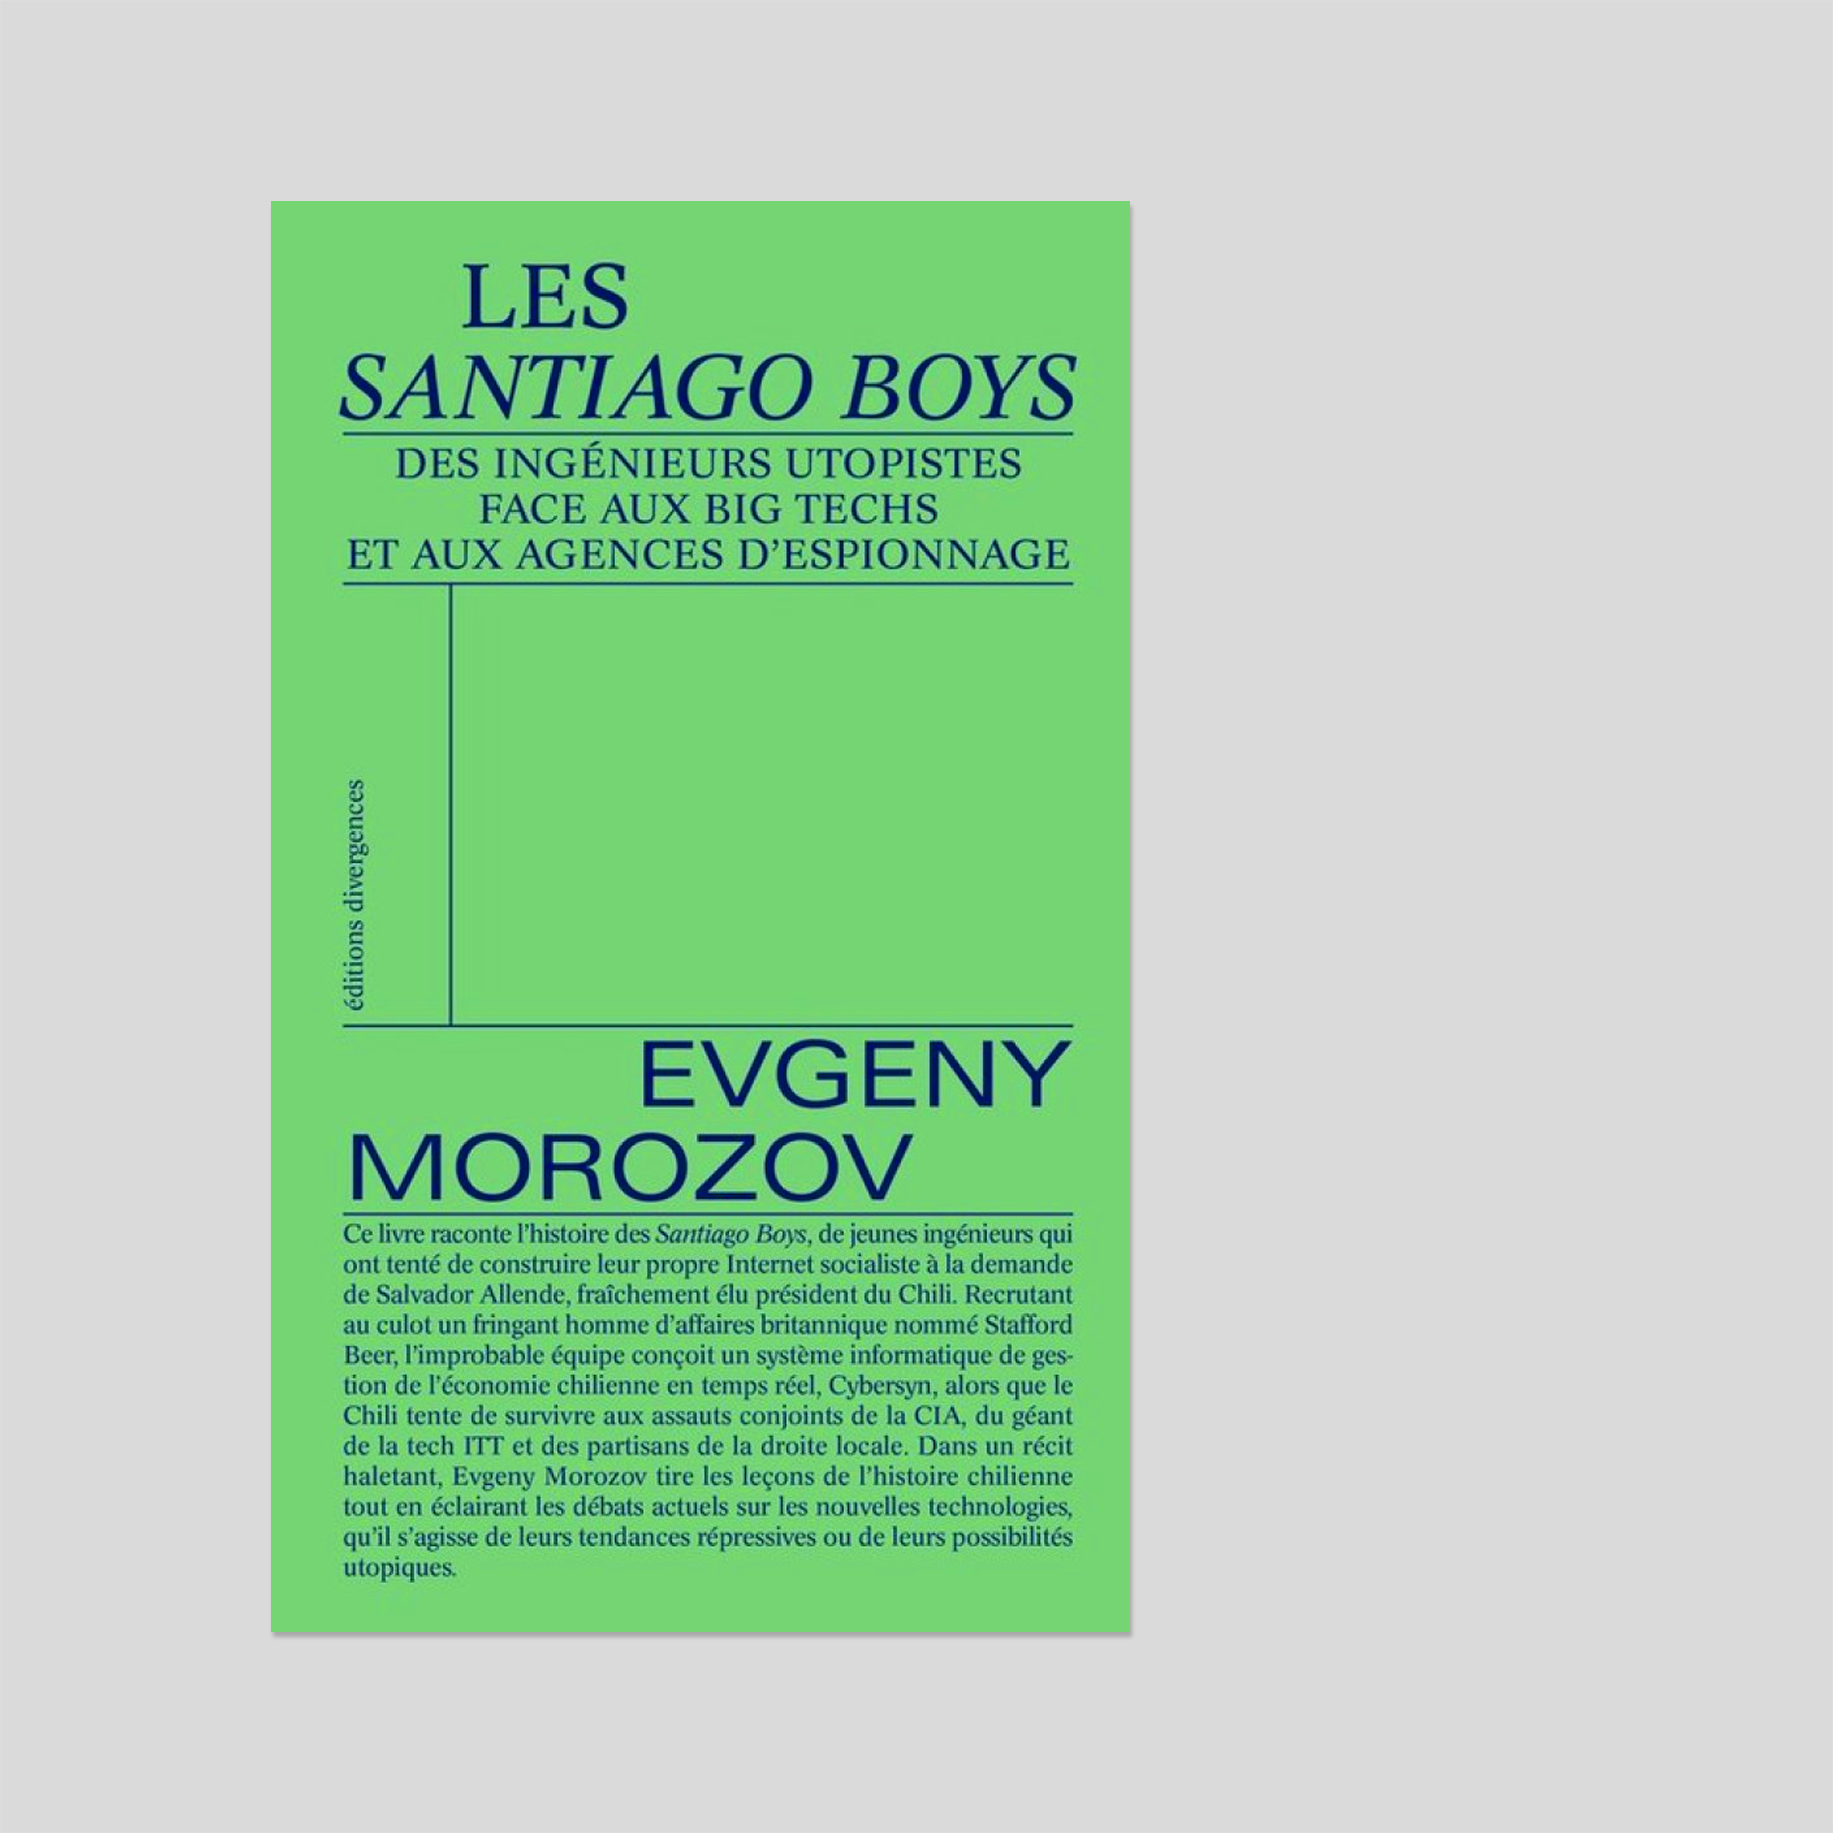 Les santiago boys — Evgeny Morozov